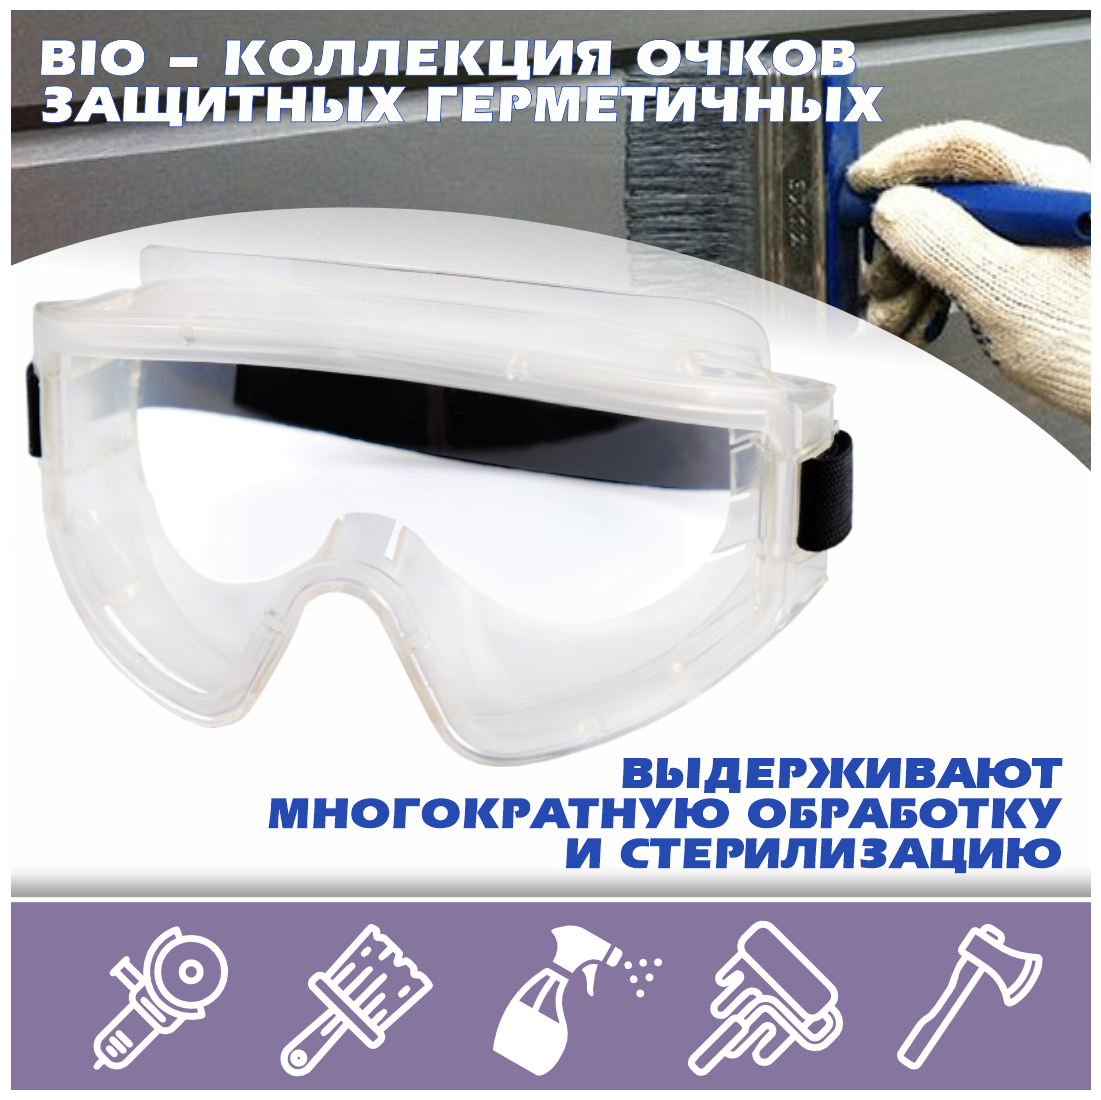 Очки защитные герметичные РОСОМЗ™ ЗНГ1 PANORAMA bio (2С-12 РС) 221337